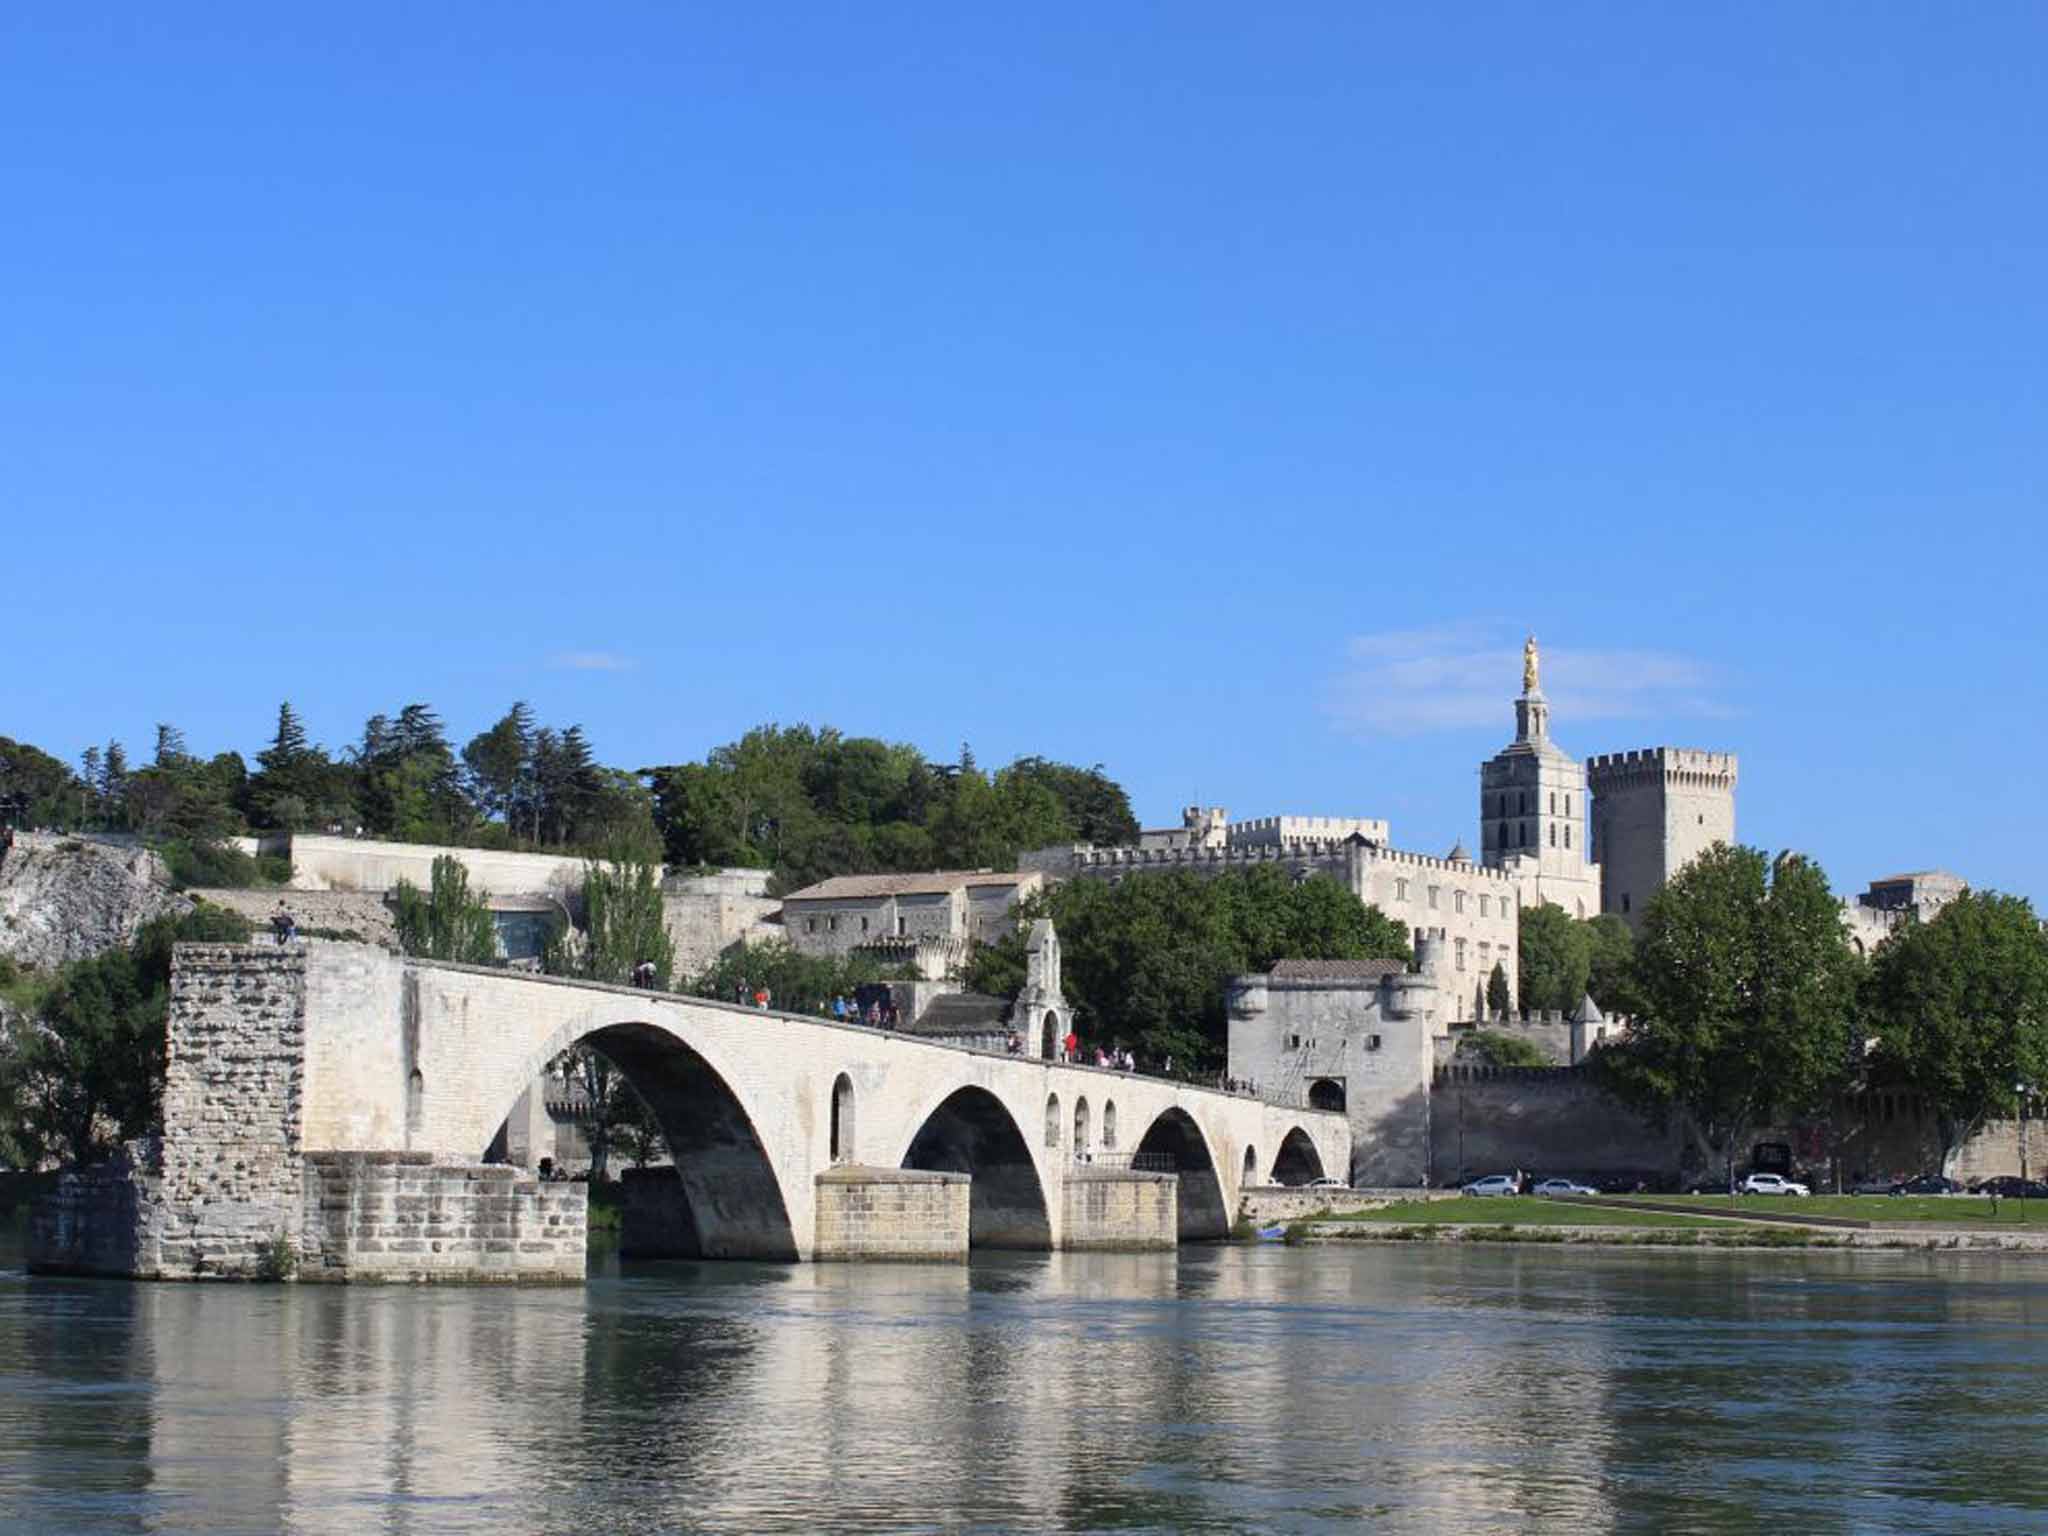 Sur le pont: the iconic ruins of St-Bénezet bridge